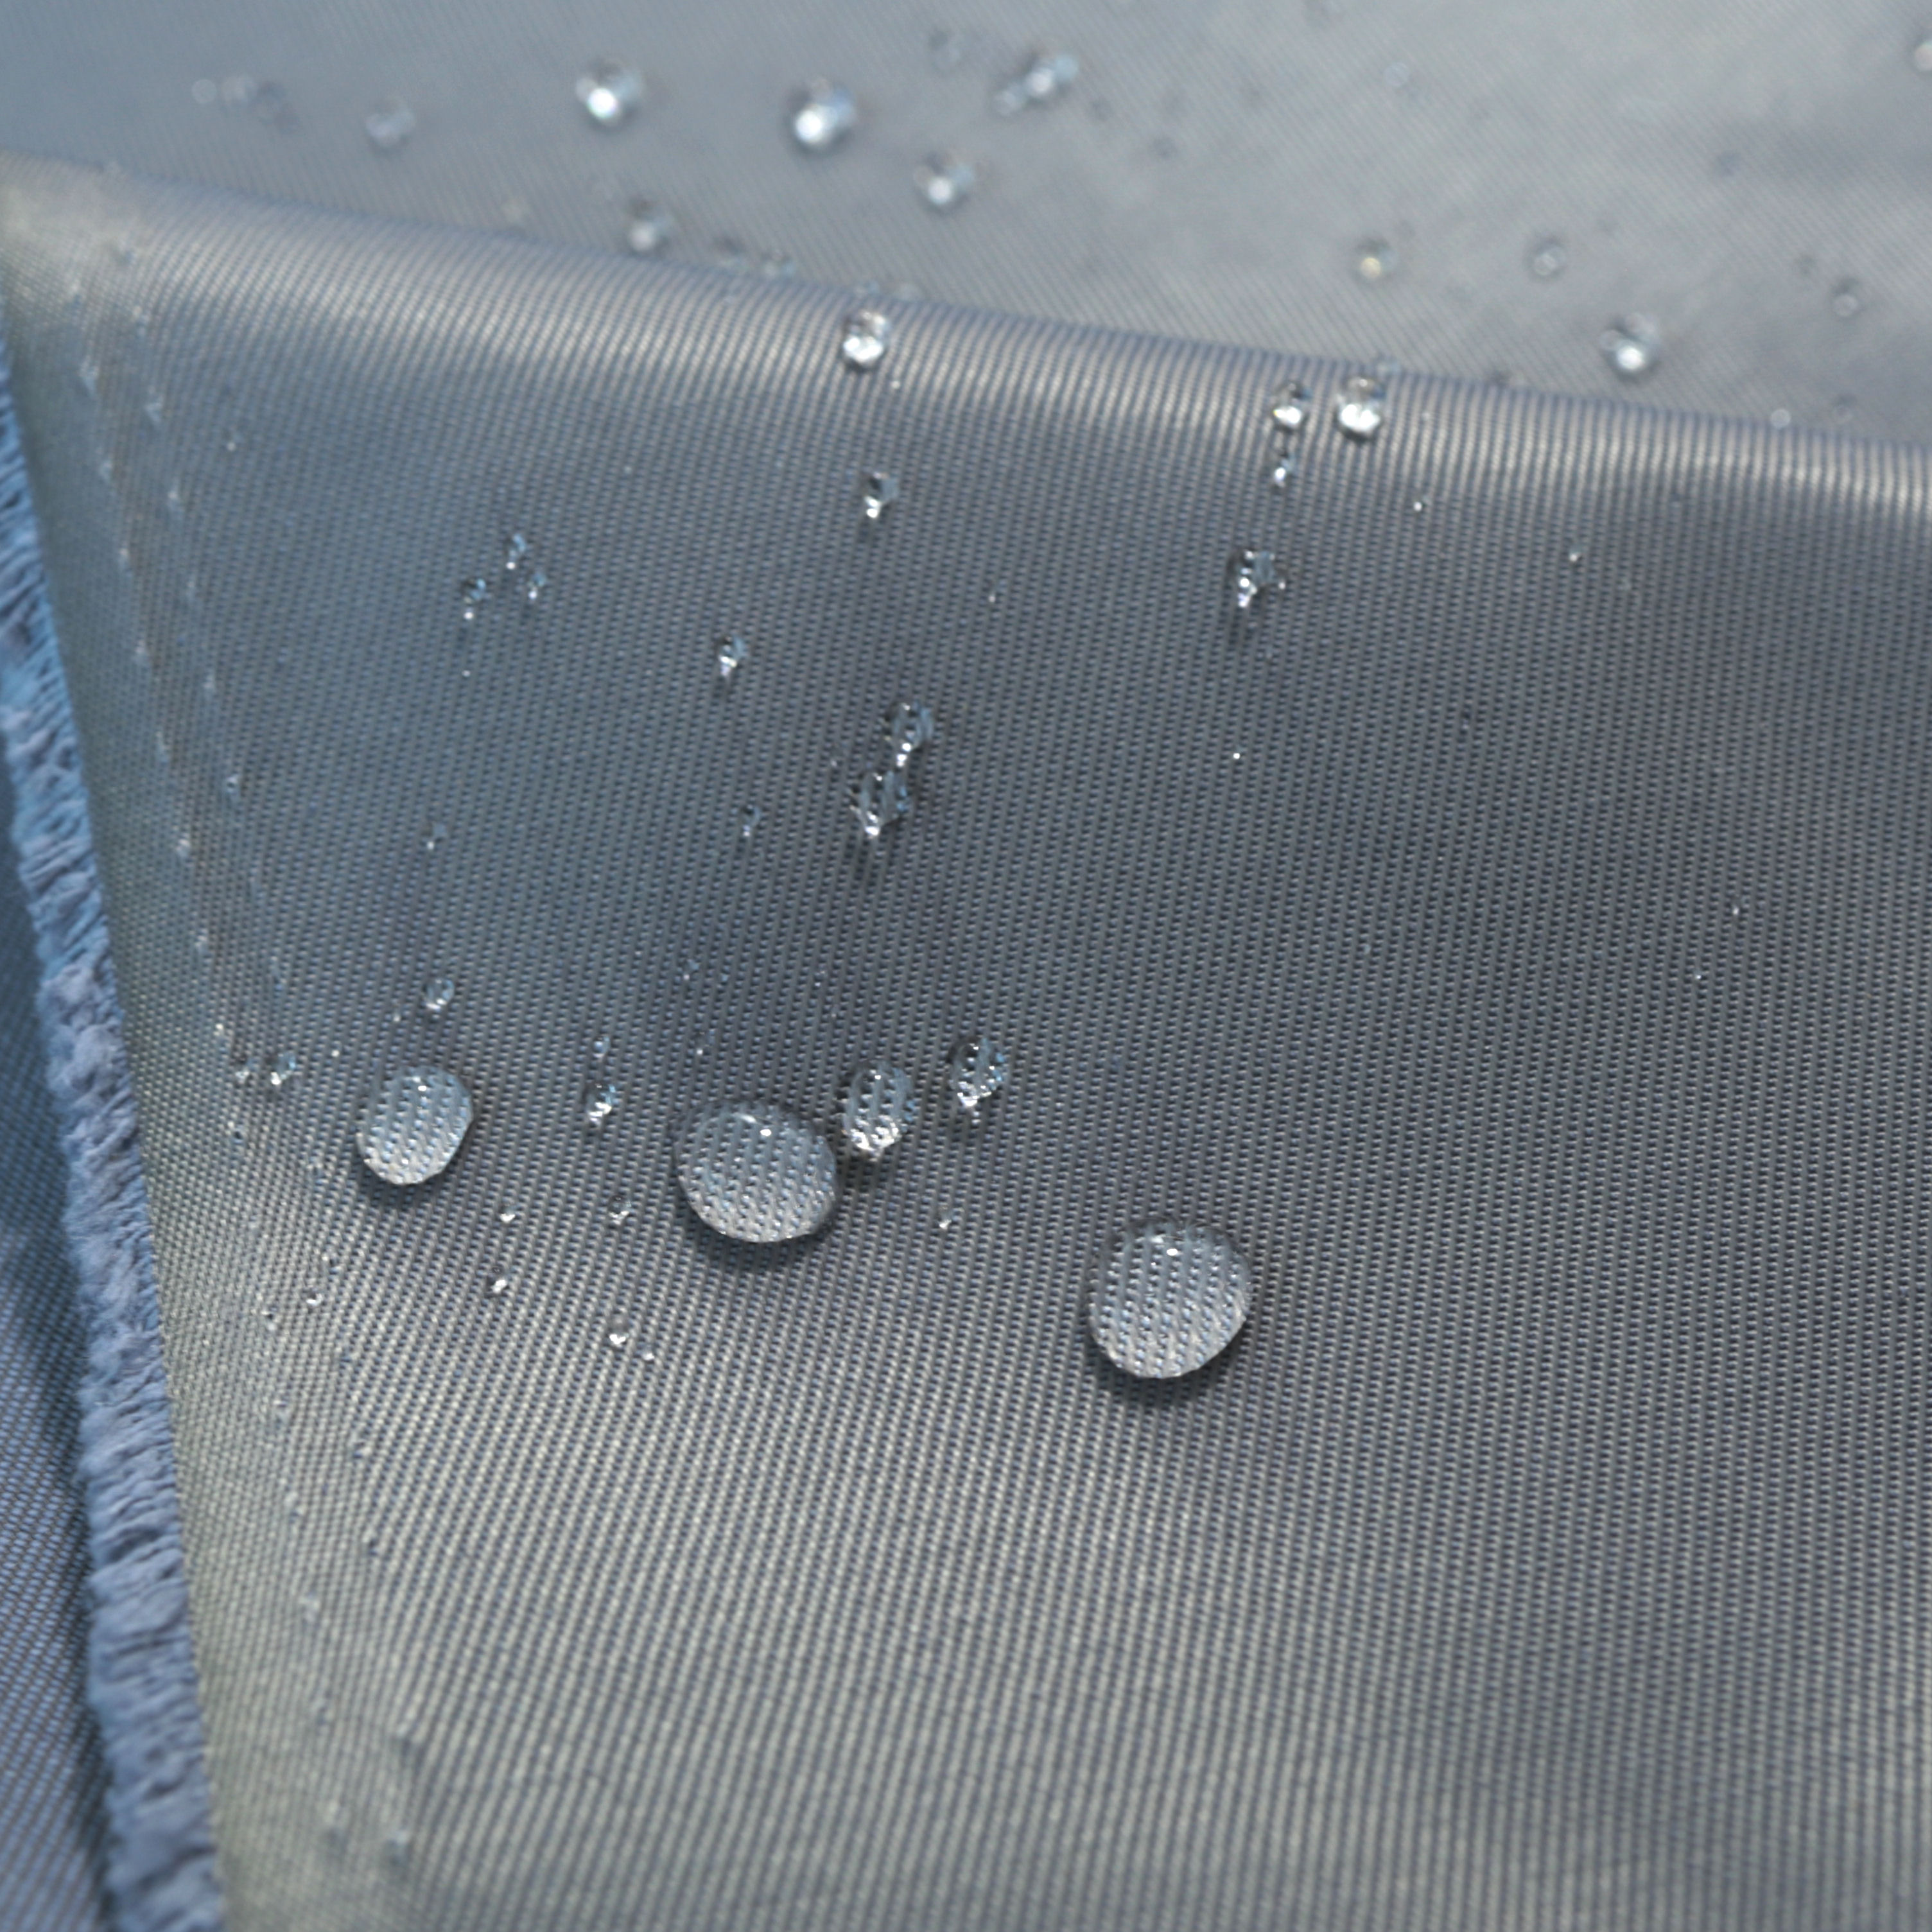 Regen Jacken Hosen Taschen Stoff in Anthrazit Wasserdicht Ölabweisend Waschbar